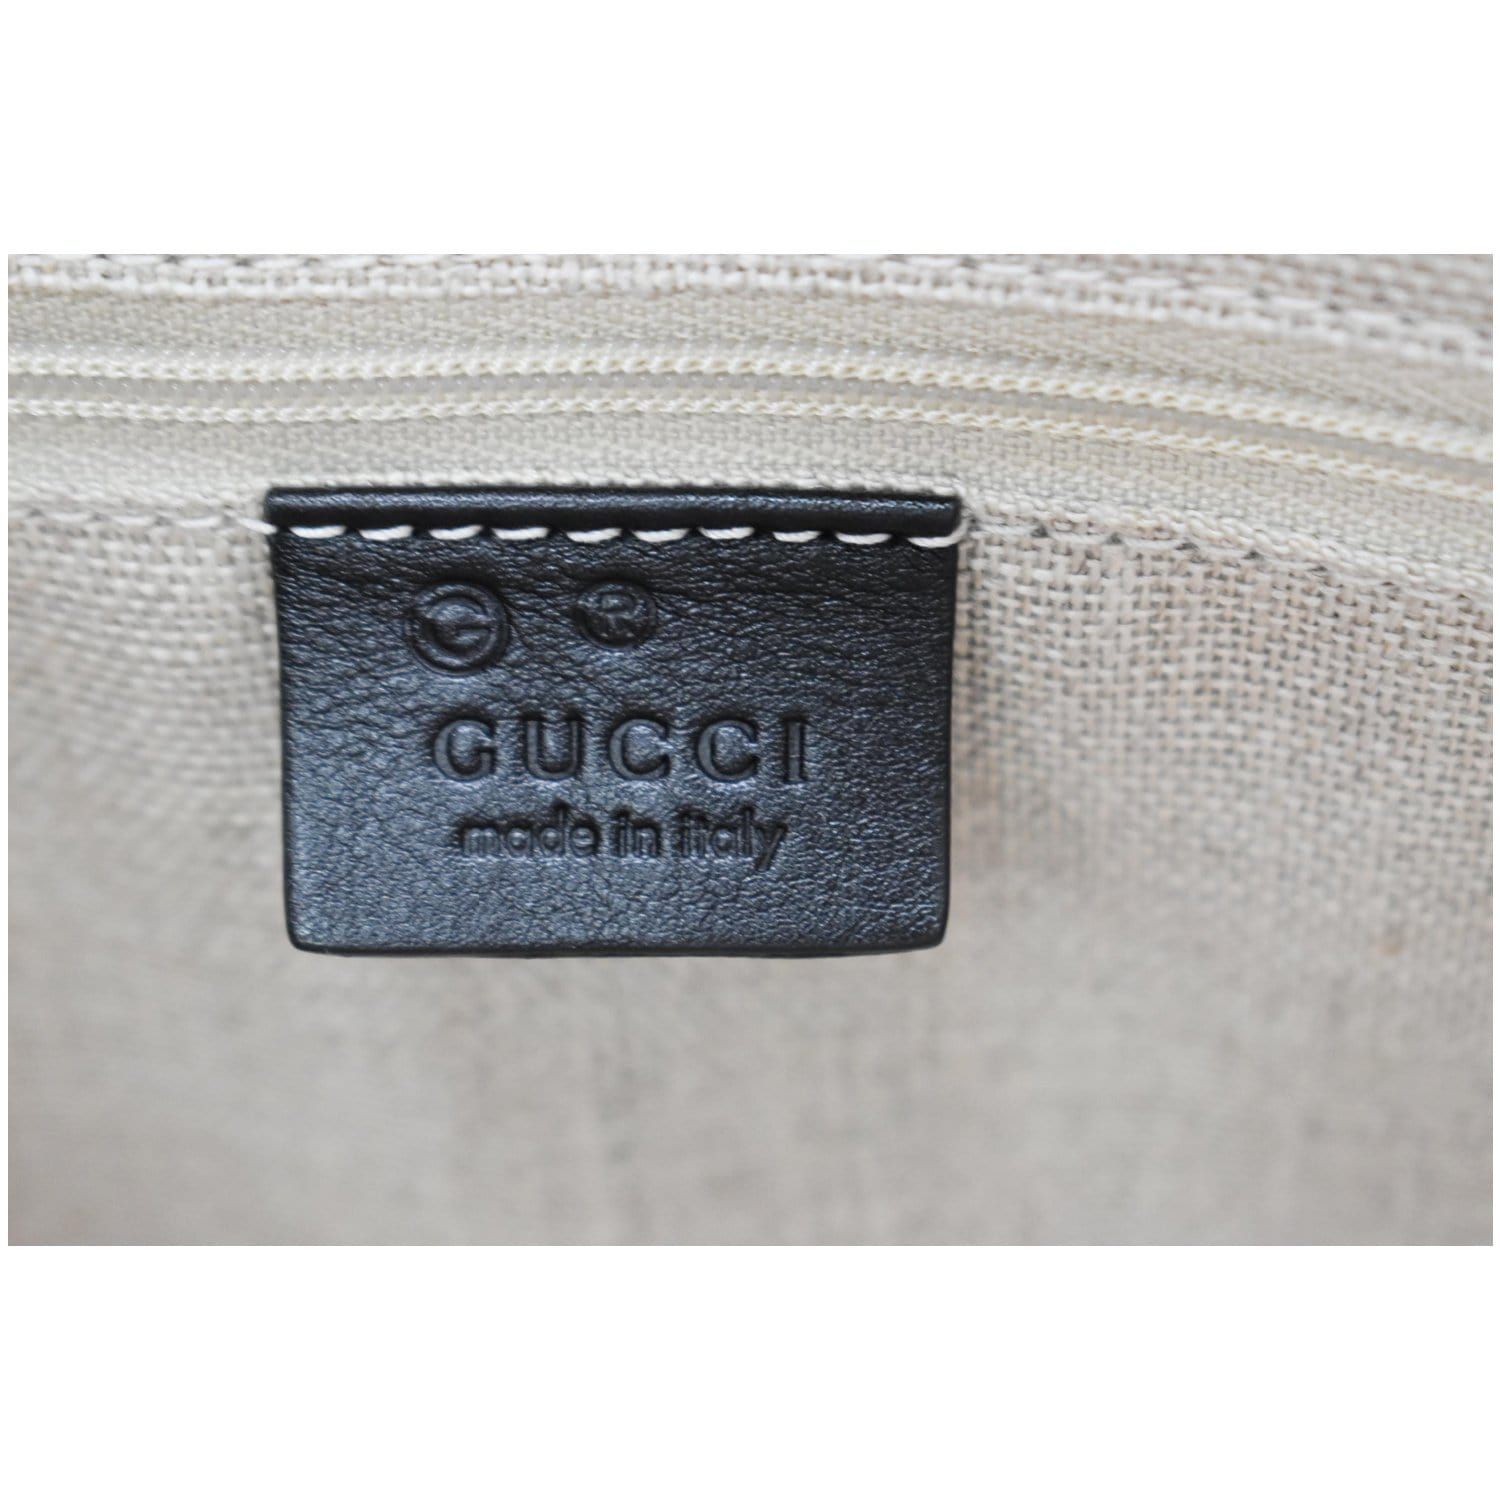 Gucci Guccissima Black Leather And Micro Convertible Handbag 449654-1000